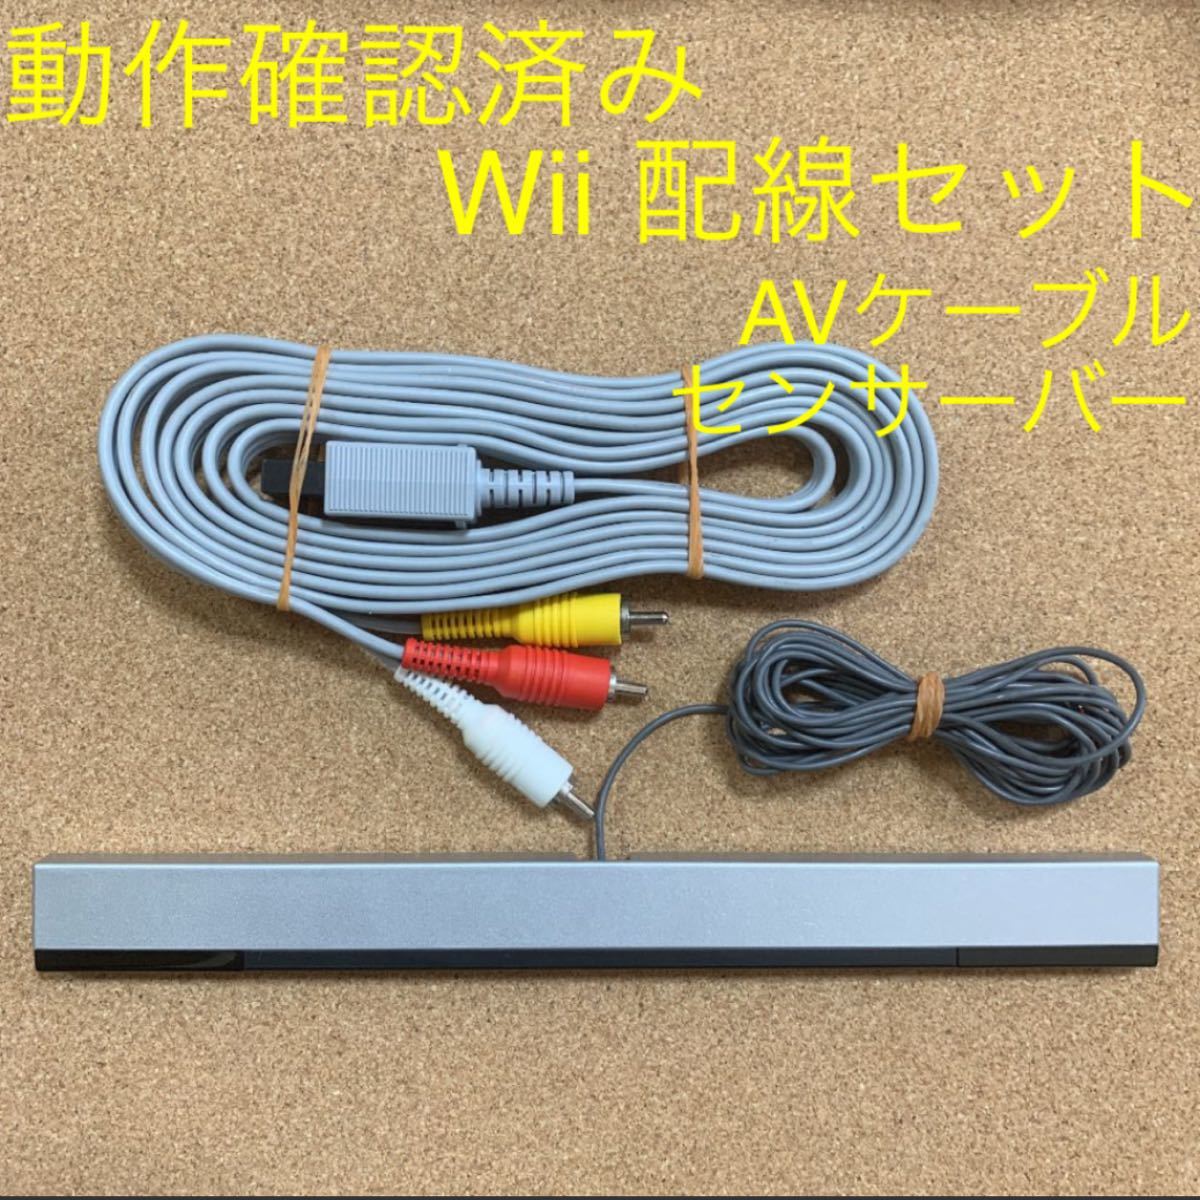 Wii用 配線セット AVケーブル センサーバー まとめ売り ウィー 任天堂 Nintendo ニンテンドー 映像 音声